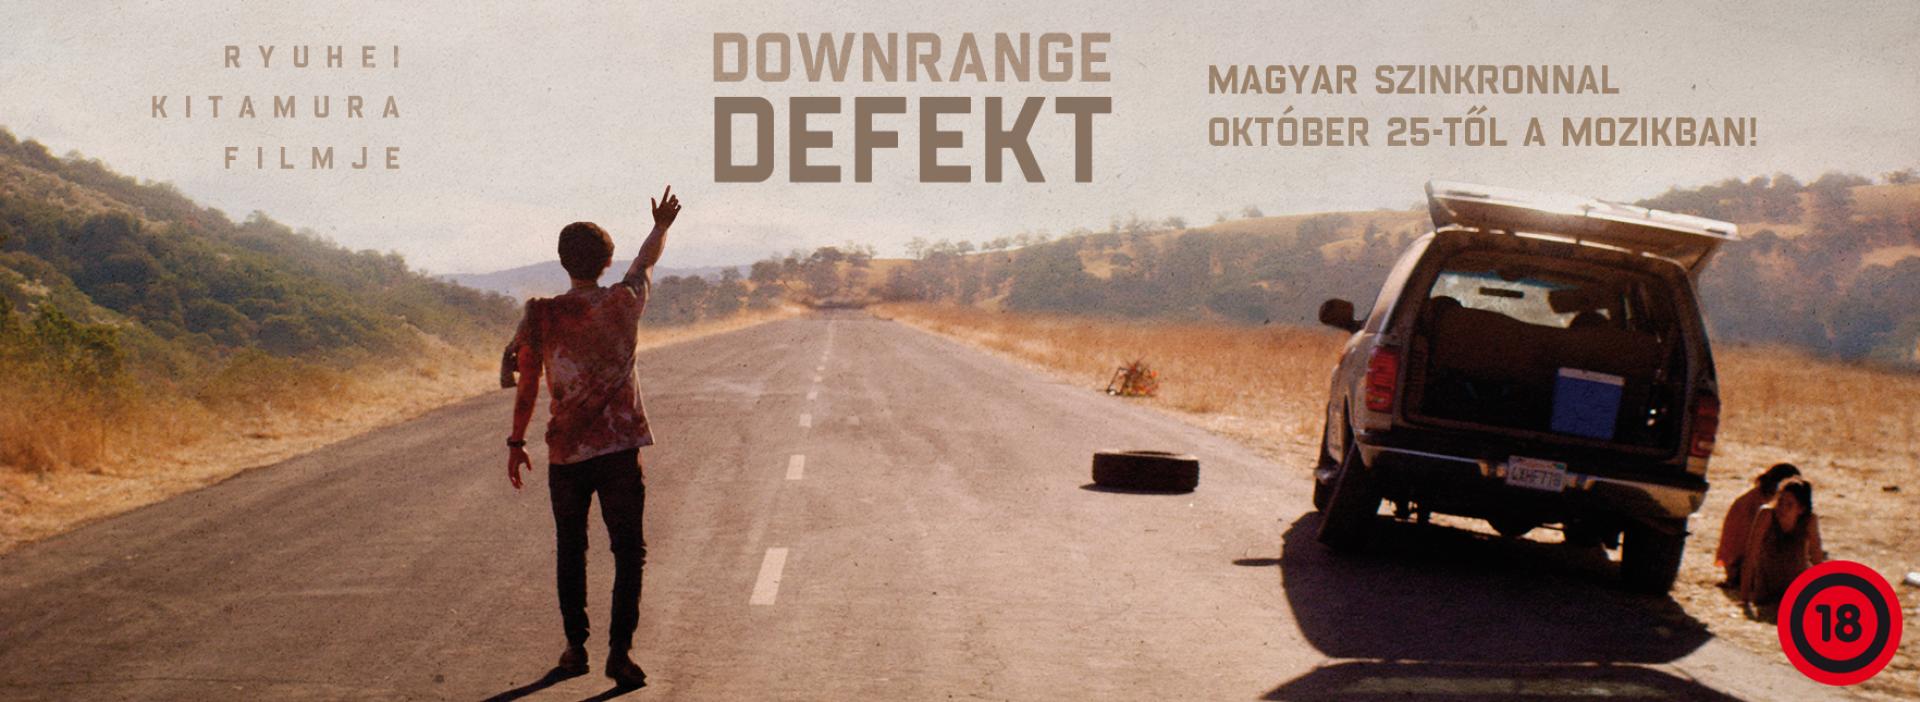 Downrange – Defekt (2017)